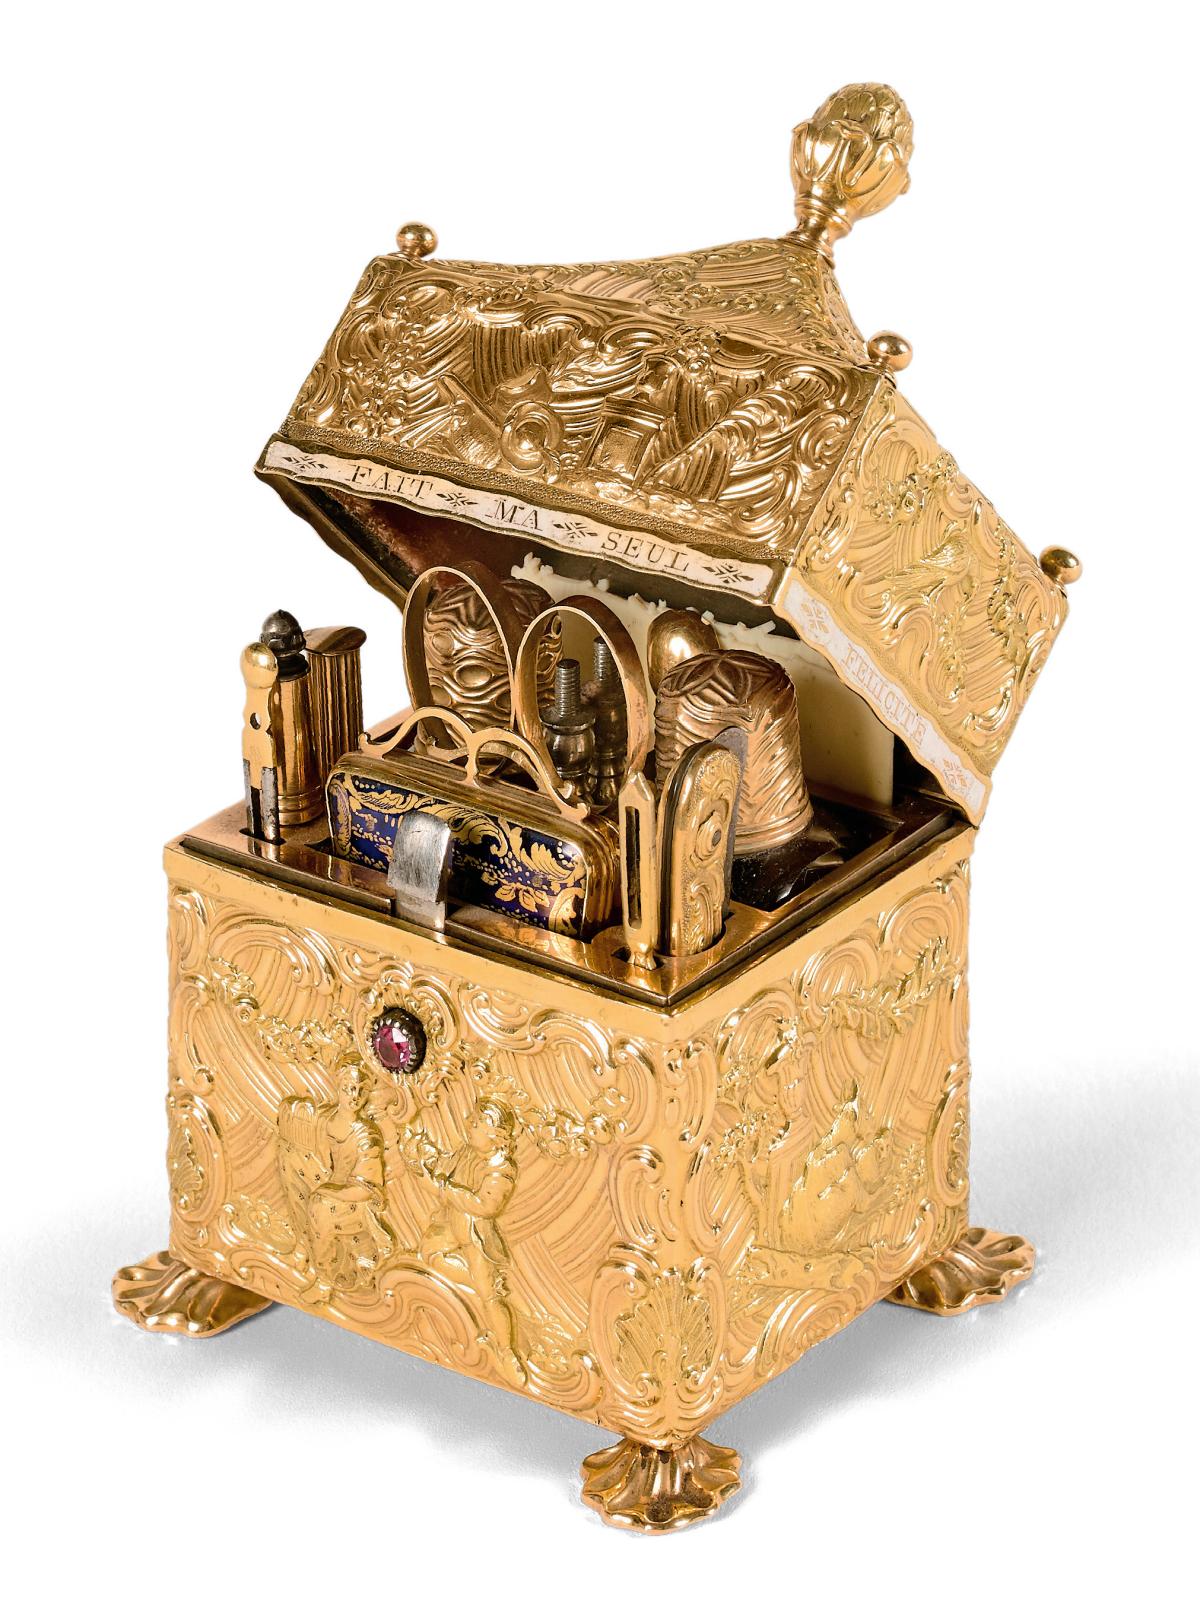 Angleterre, vers 1770. Coffret-nécessaire en or doublé sur cuivre à décor ciselé toutes faces, intérieur garni de velours rouge contenant 